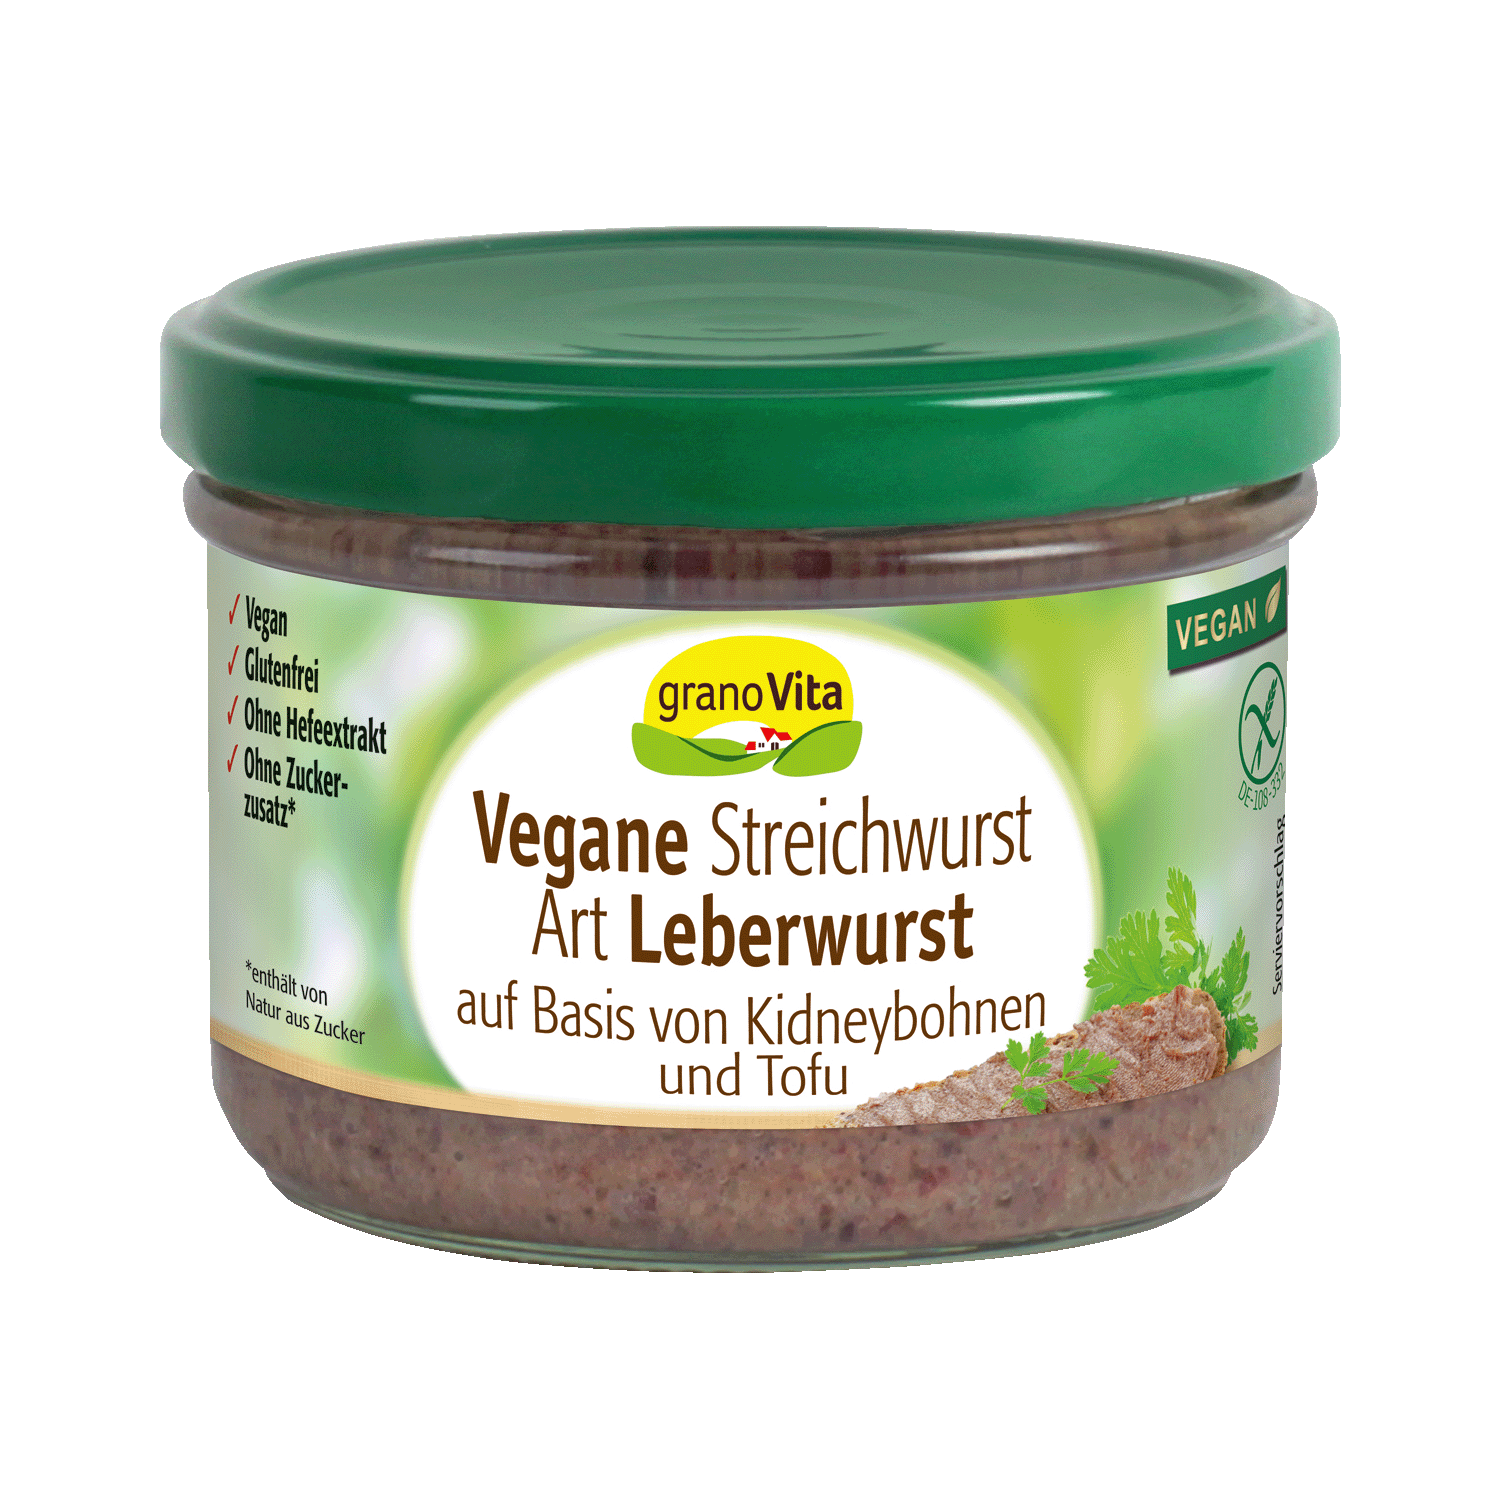 granoVita Vegane Streichwurst Art Leberwurst, 180g